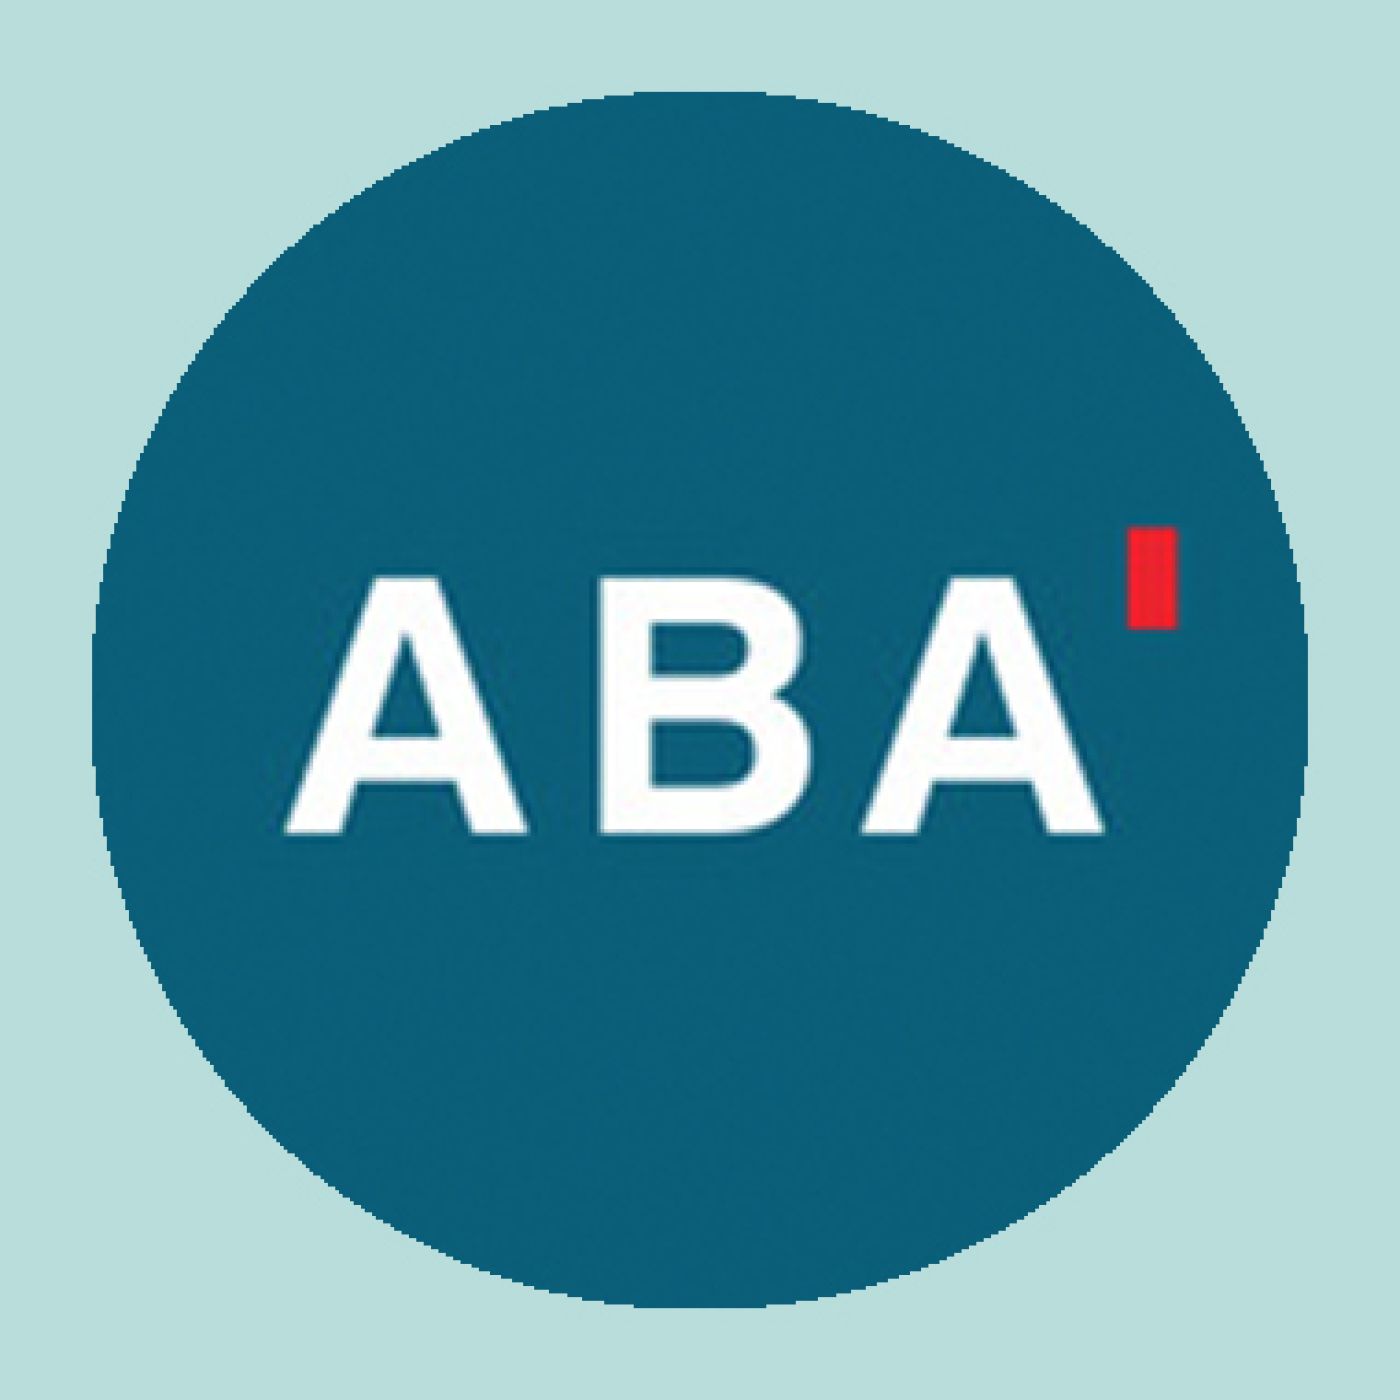 Aba logo circle